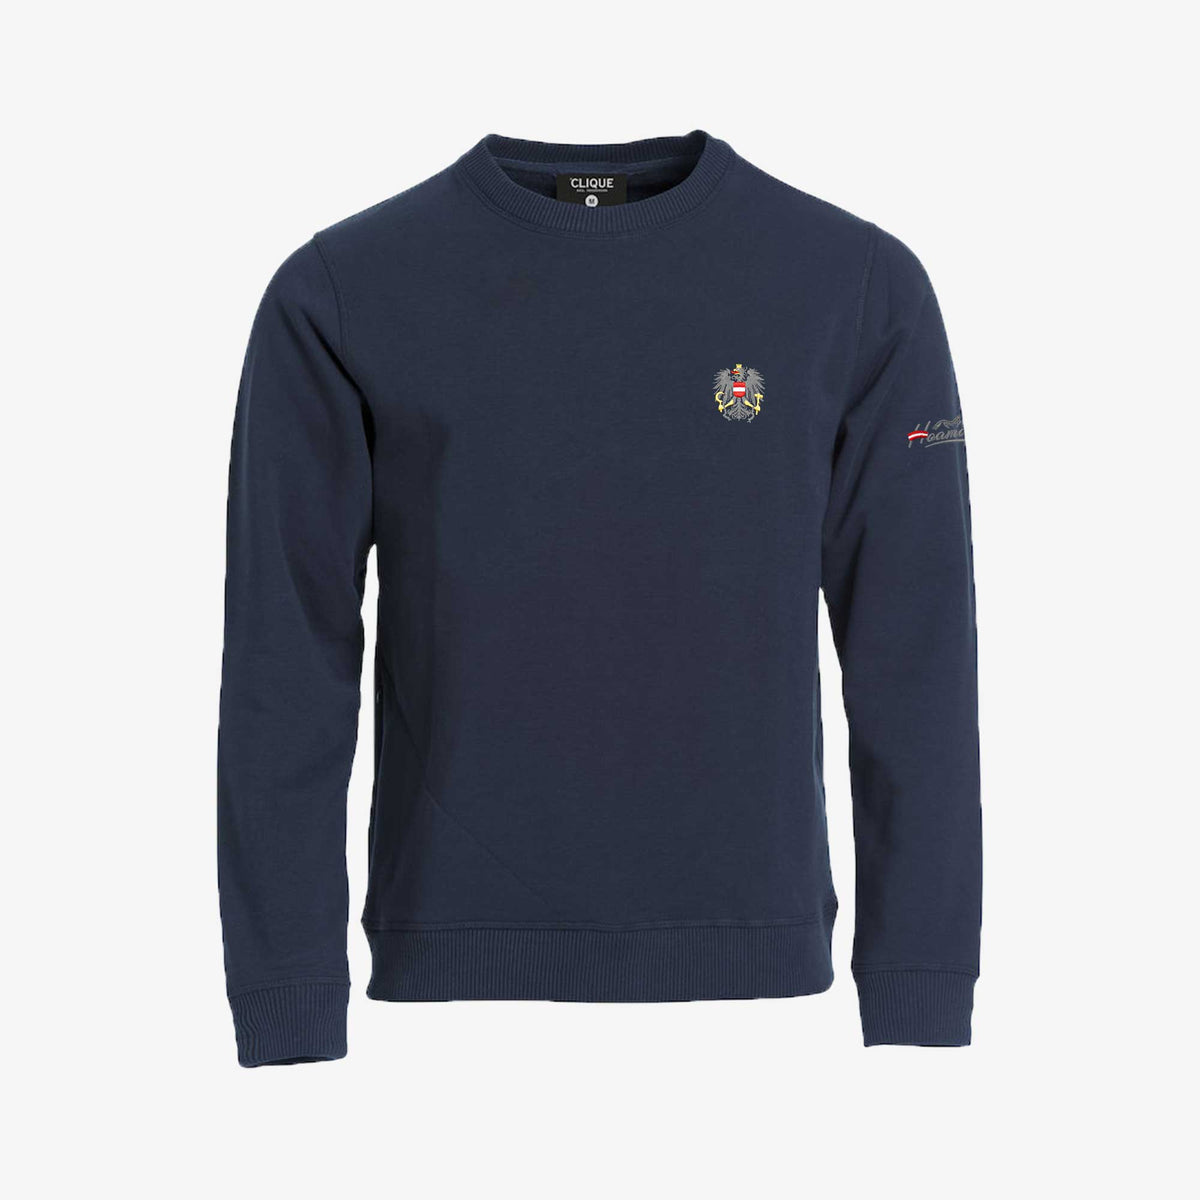 Österreich Adler Sweater kaufen #Farbe_Navy-Blau